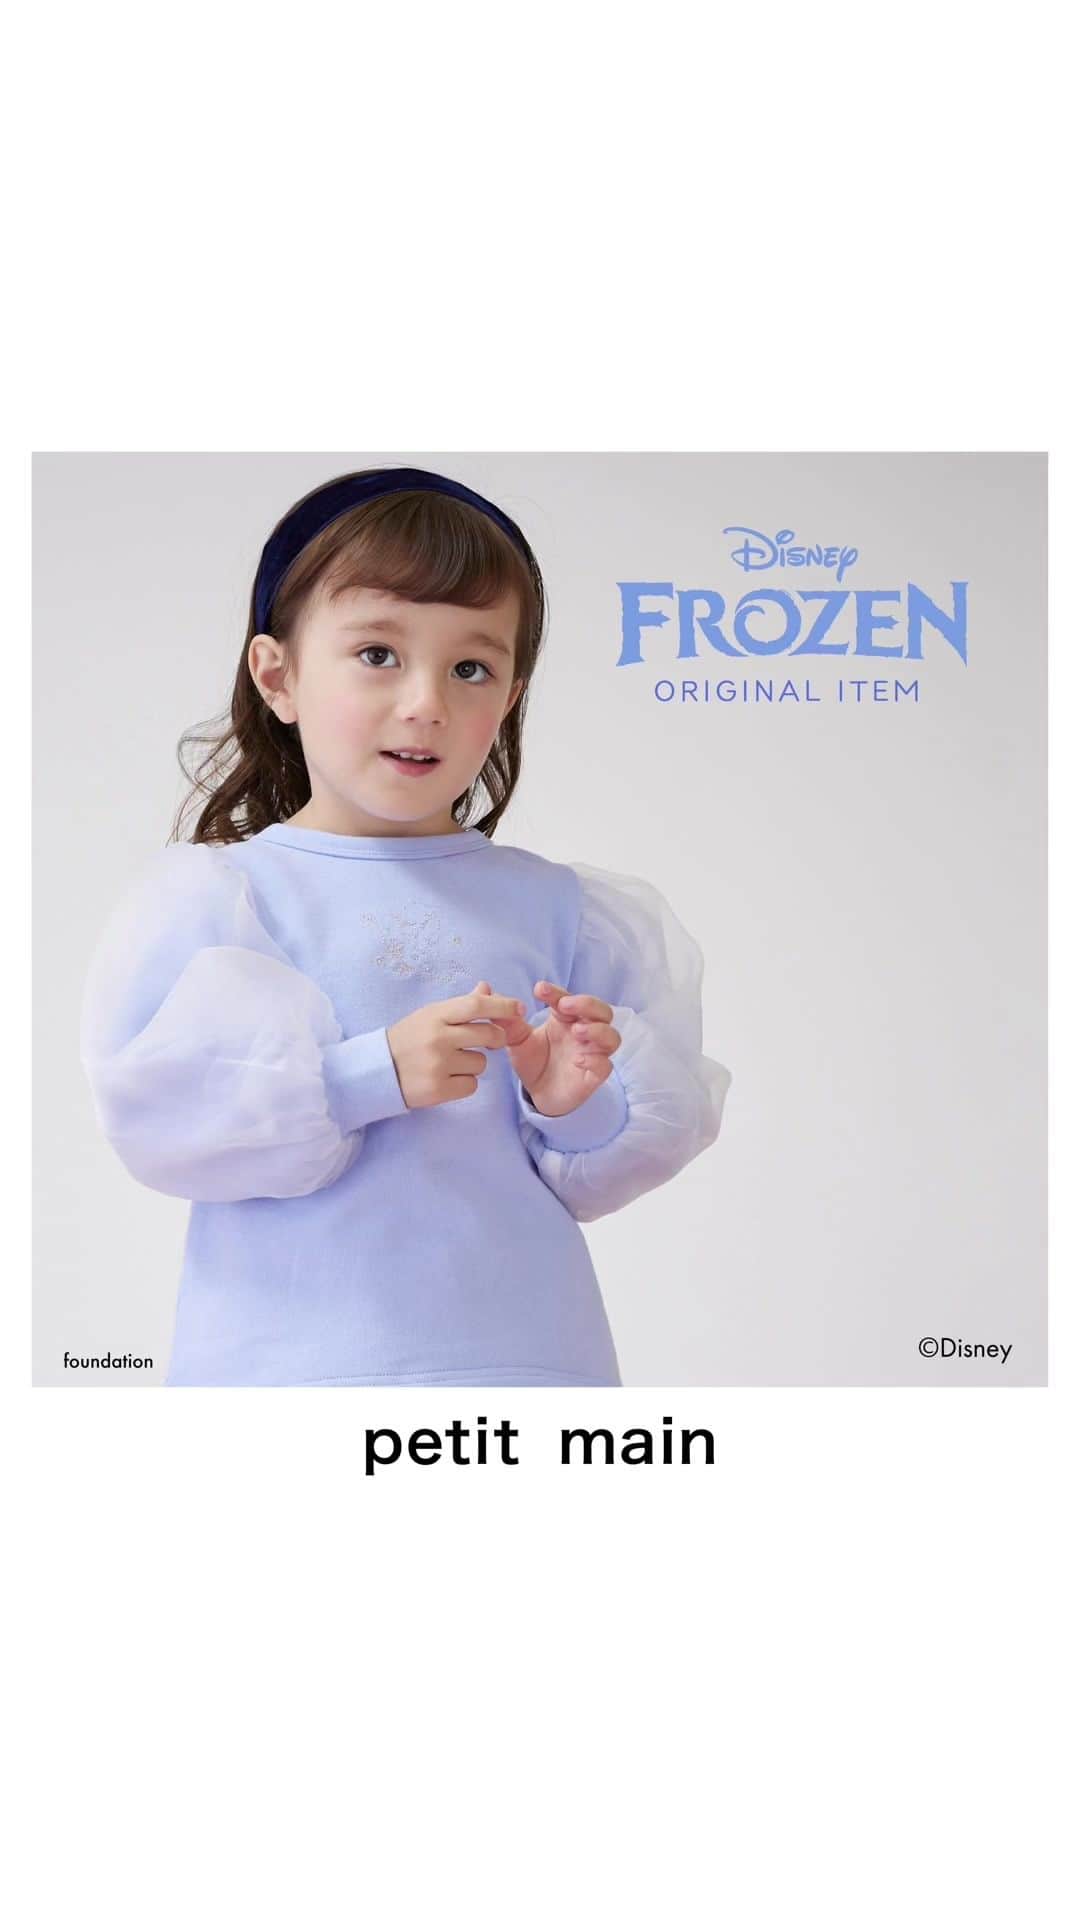 petit mainのインスタグラム：「. 　 　 Disney100周年を記念して スペシャルアイテムが発売！ 　 〈アナと雪の女王〉デザインは今回初登場。 　 全国のプティマインショップにて 11月15日(水)より順次発売スタートです。 　 袖のふんわりチュールにはキラキラのラメが 入って可愛い♡　プリンセスの刺繍もラメで入って、 少し大人なデザインが心をくすぐりますね。 　 合わせやすいデザインなので 色々なコーディネートを楽しめます。 　 　 【Disney】 キラキラパフトレーナー 80〜130cm 品番：9634214 価格：¥2,860（税込） 　 〈ラベンダー〉 【リンク】ラップスカパン 80〜130cm 品番：9634103 価格：¥2,860（税込） 　 ウール混リブタイツ 80〜130cm 品番：9634402 価格：¥1,430（税込） 　 バレエフラットシューズ 14-19㎝ 品番：9633414 価格：￥3,520(税込) 　 〈クロ〉 スカート付きレギンス 80〜130cm 品番：9634105 価格：¥2,860（税込） 　 ウエスタンブーツ 14-19㎝ 品番：9633417 価格：￥3,960 (税込) 　 〈シロ〉 カットコールフレアパンツ 80〜130cm 品番：9634106 価格：¥2,090（税込） 　 イブルショルダーバッグ F 品番：9633435 価格：¥2,530（税込） 　 バレエシューズ 14-18㎝ 品番：9633424 価格：¥3,520（税込） 　 　 　 　 モデル着用 model girl：身長93㎝ / 着用90㎝ model girl：身長98㎝ / 着用100㎝ 　 　 　 〈ご注意〉 ※写真はサンプルで撮影しています。色・デザインが多少が異なる場合がございます。 ※入荷、在庫状況は店舗によって異なる場合がございます。ご利用の店舗までご確認ください。 ※ナルミヤオンラインでは入荷次第順次発売となります。入荷、在庫状況について詳しくはナルミヤオンラインまでご確認ください。 ※instagram利用規約に基づき、投稿のコメントを削除させていただく場合がございます。 @narumiyaonline_official 　 　 　 #disney #ディズニー #mickeymouse #ミッキーマウス #petitmain #プティマイン #プティキッズ #プティの新作 #女の子ベビー #男の子ベビー #むすめふく #むすこーで #女の子コーデ #男の子コーデ #女の子服 #男の子服 #女の子コーディネート #男の子コーディネート #子どものいる暮らし #子どもと暮らす #子供服 #子供服通販 #新生児服 #赤ちゃんのいる暮らし #子育てグラム #instafashion #instagood #限定 #限定アイテム #限定ウェア」